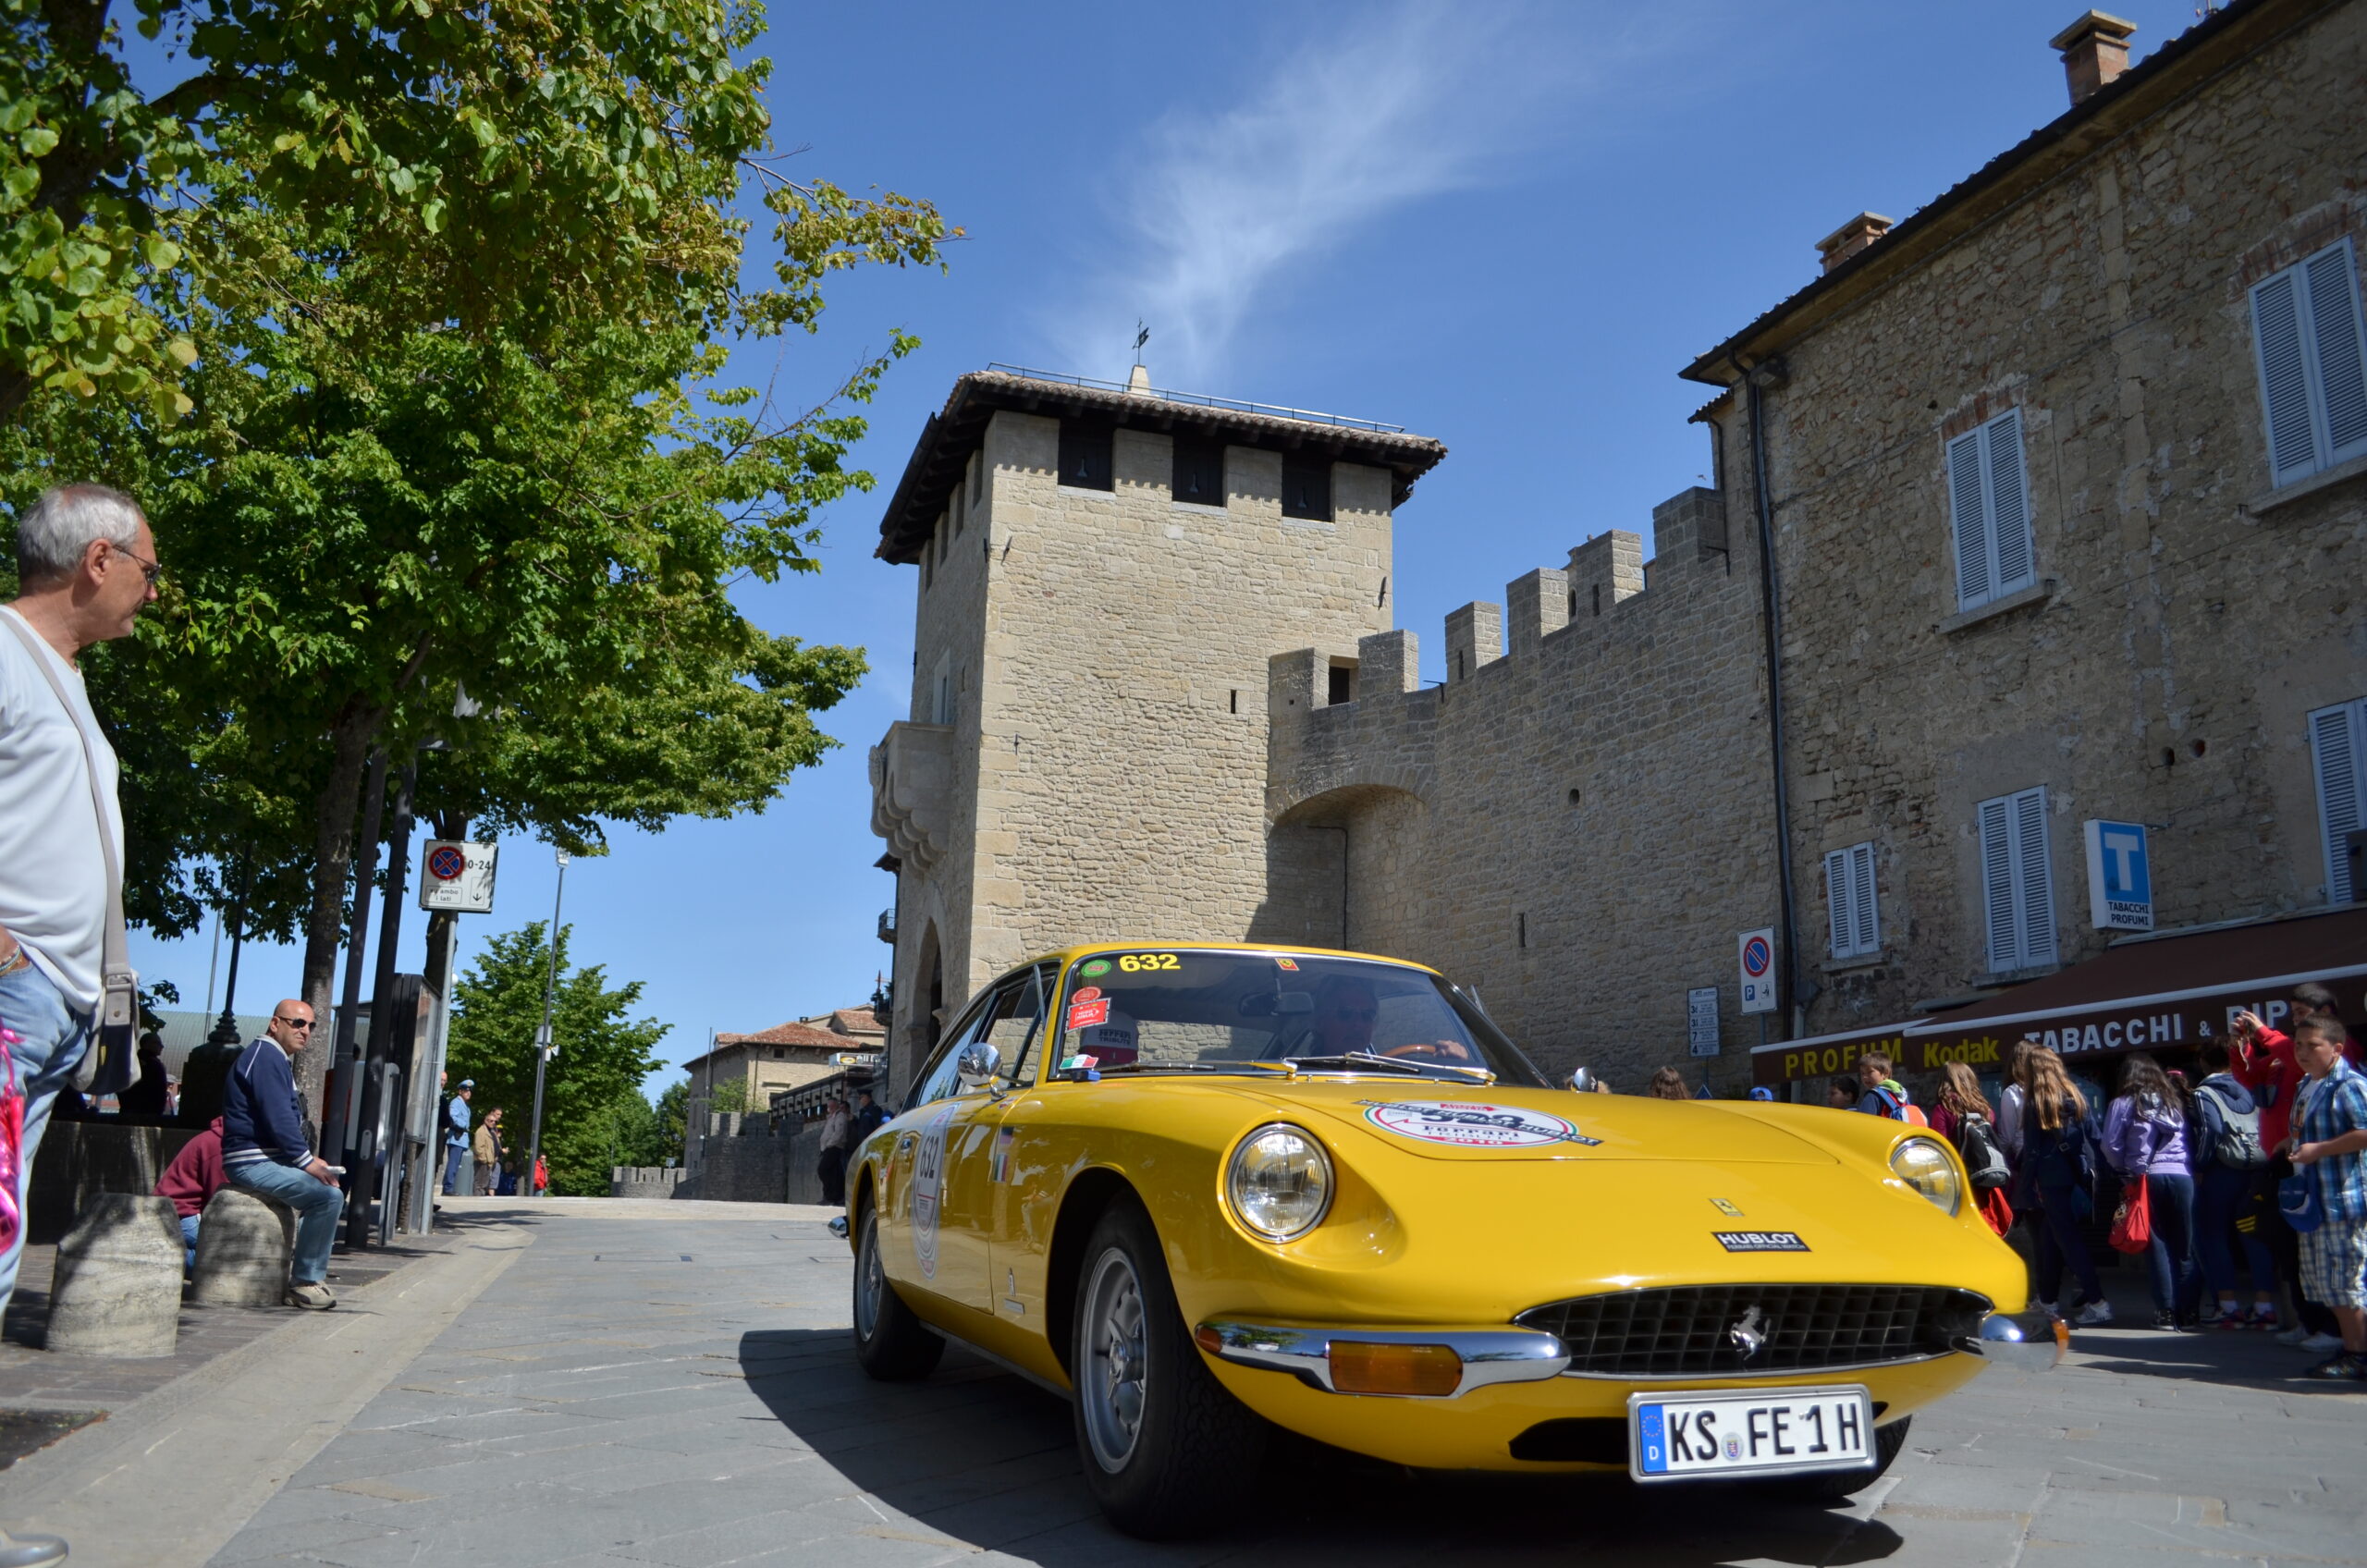 Ritorna a San Marino la “1000 Miglia” dopo due anni. Dopodomani la sfilata delle affascinanti auto d’epoca